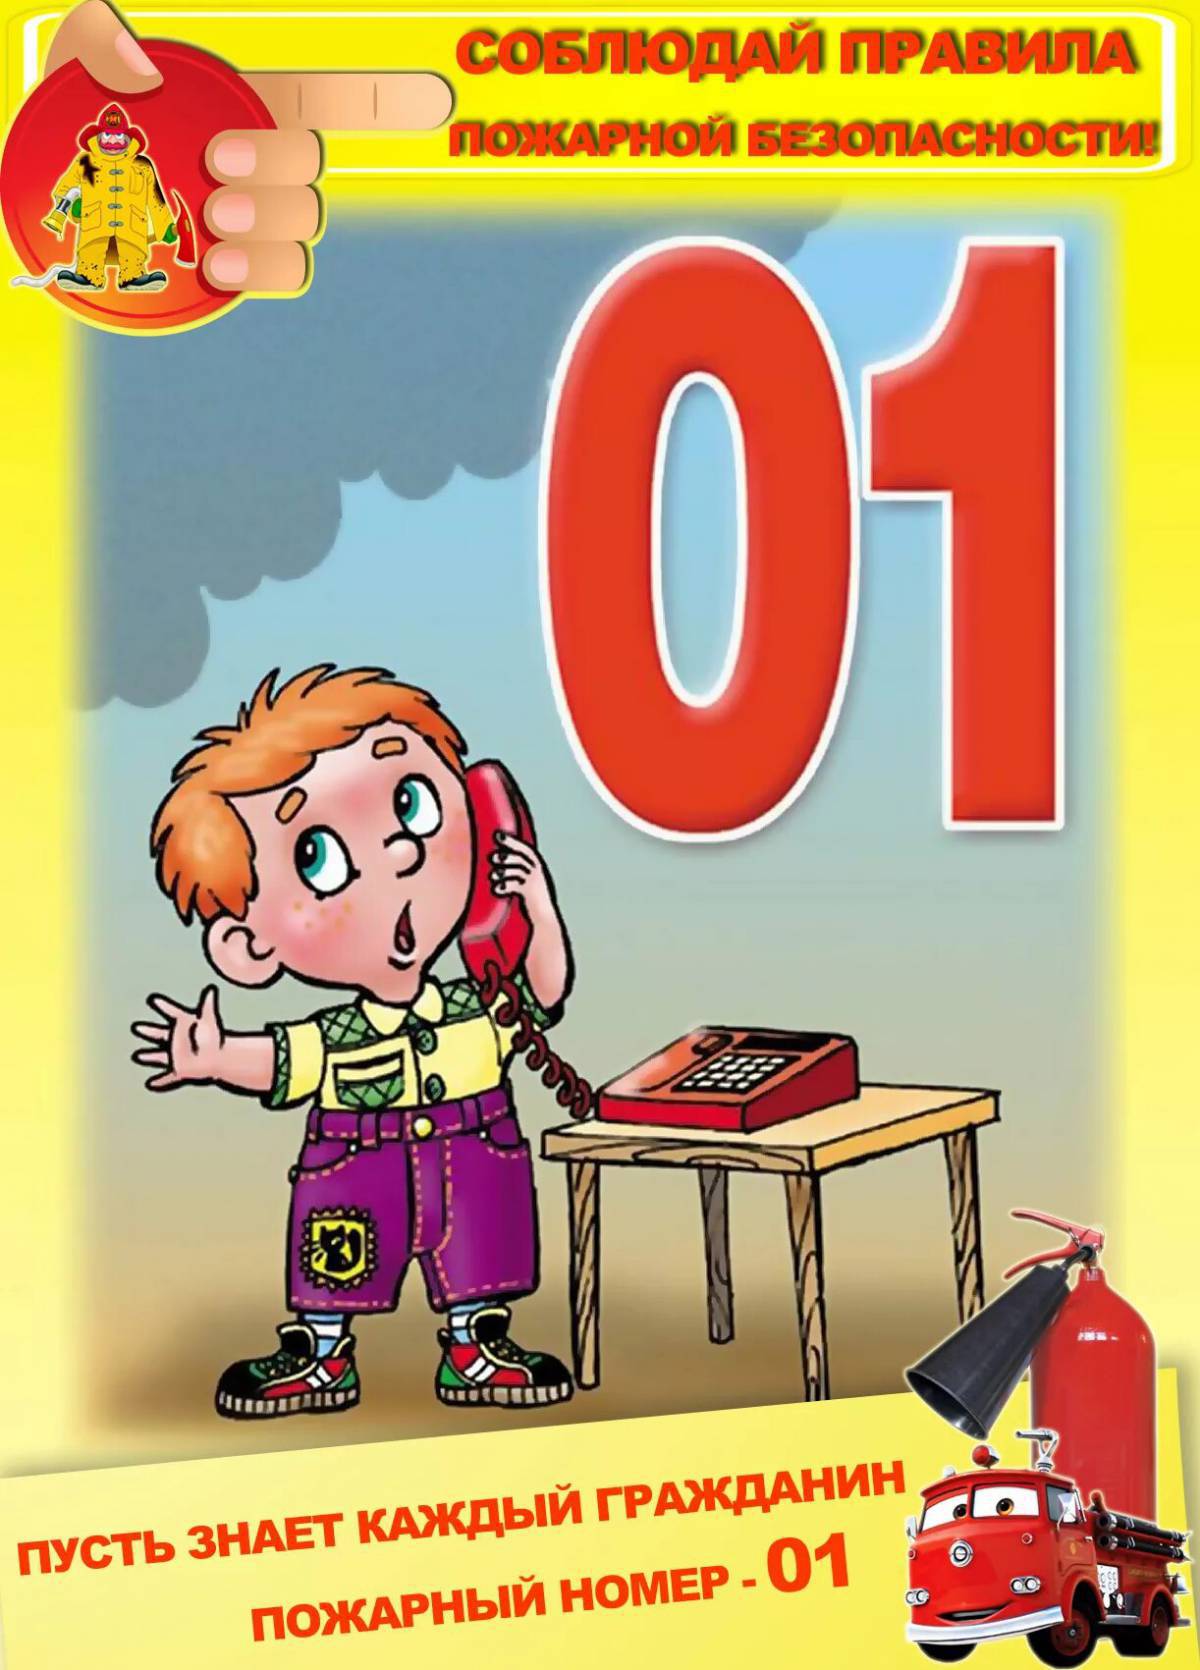 Правила пожарной безопасности для детей #15